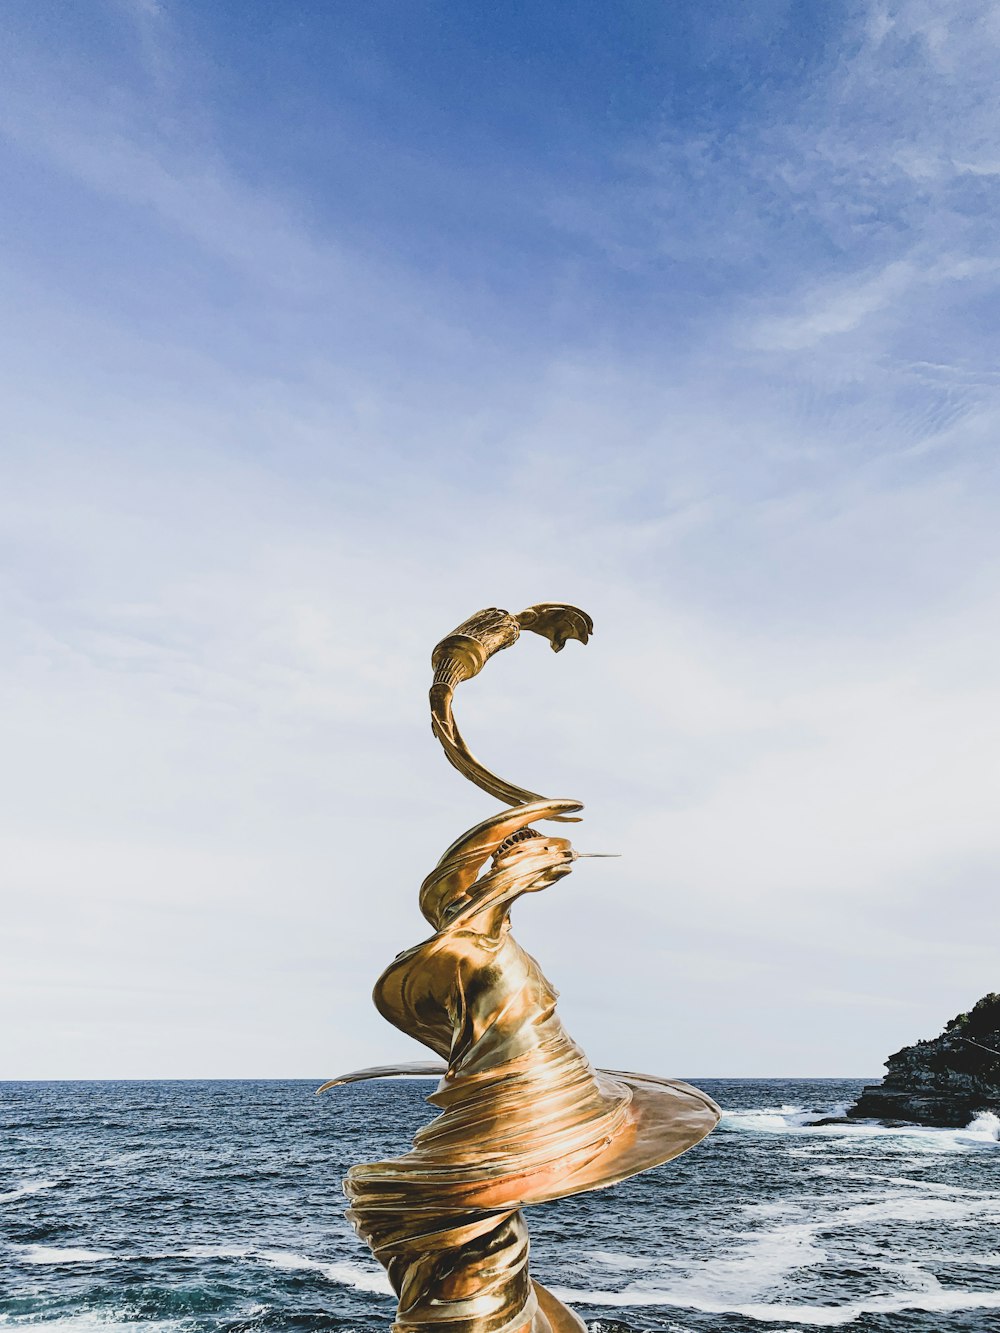 하얗고 푸른 하늘 아래 해변 근처의 소용돌이 치는 황금 동상